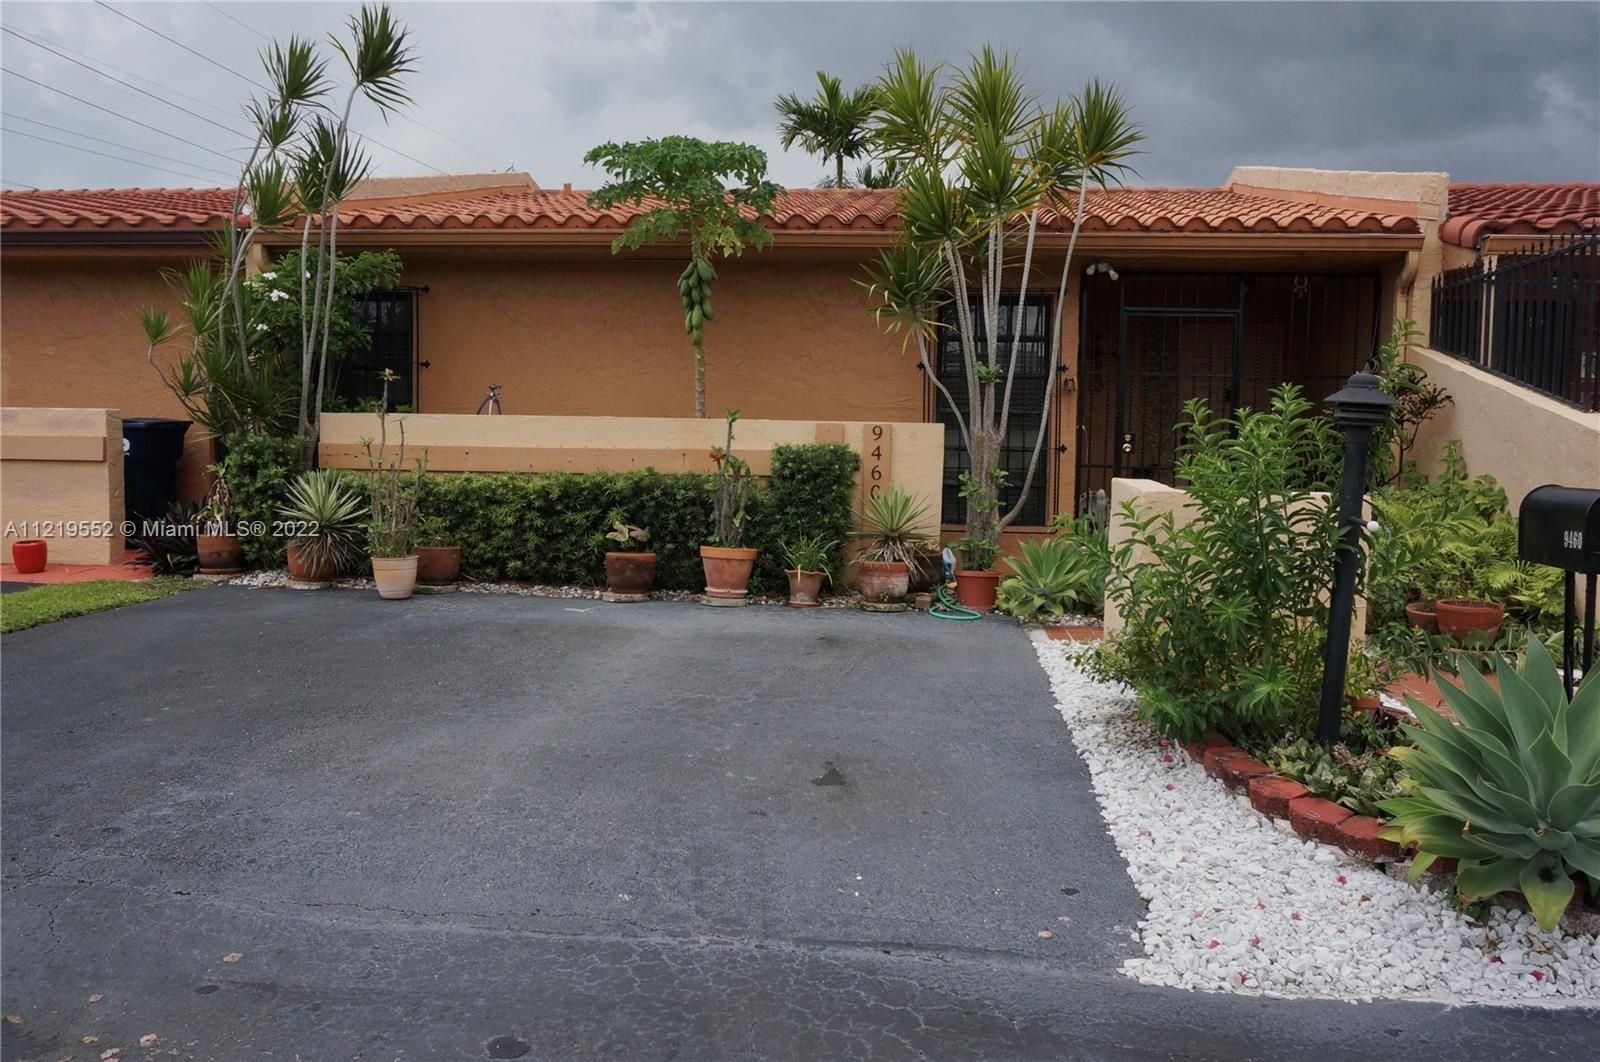 Real estate property located at 9460 4th Ln, Miami-Dade County, Miami, FL